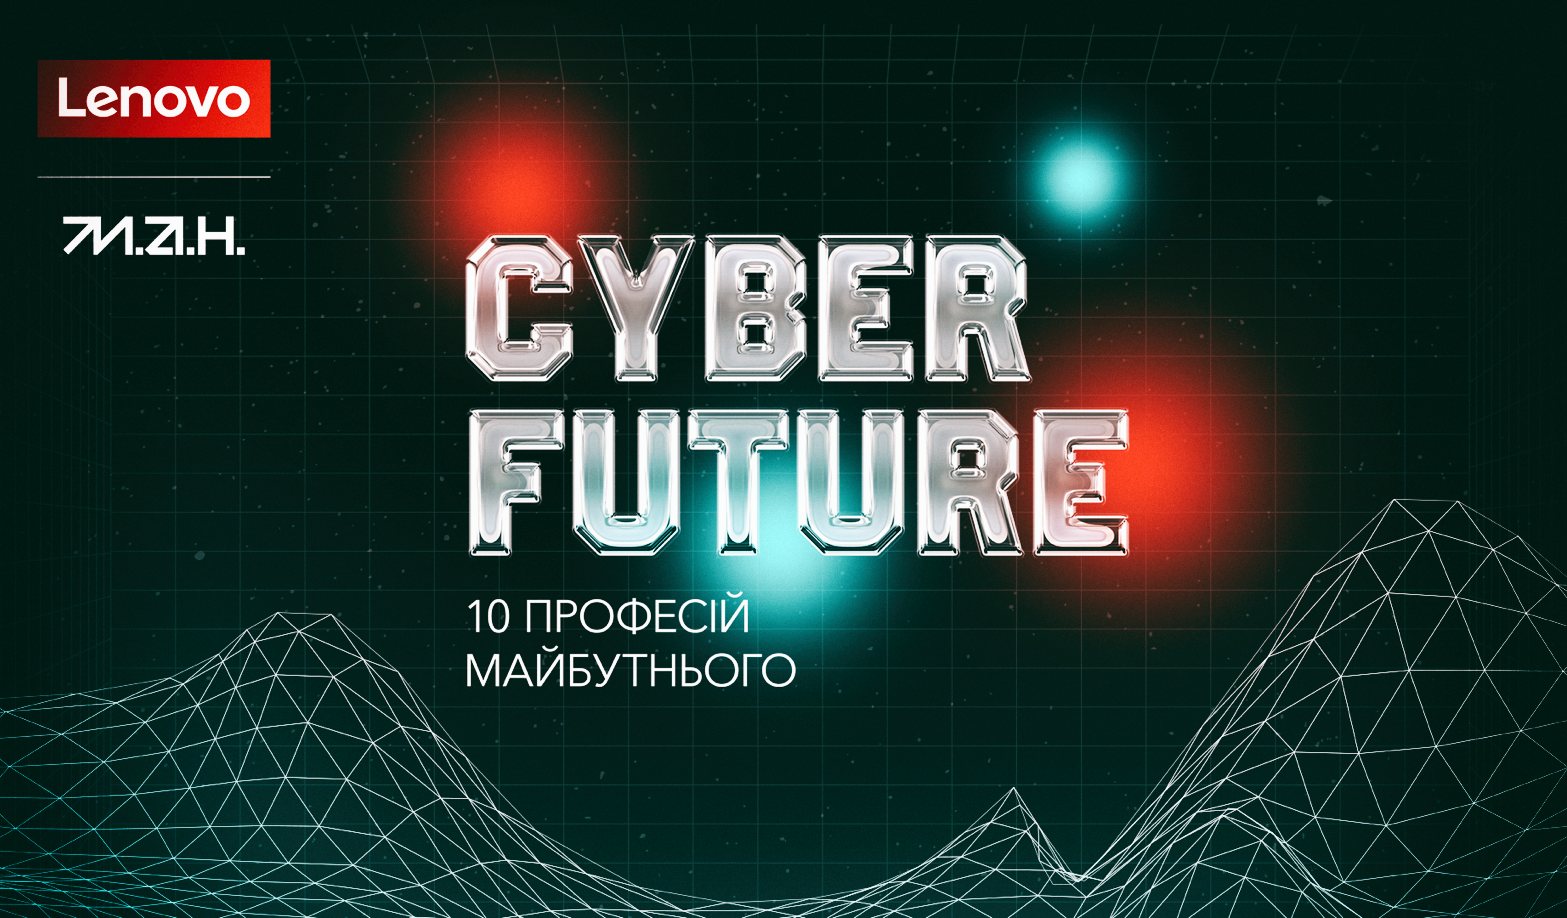 Гайд сучасними професіями: Lenovo та МАН випустили профорієнтаційний YouTube-проєкт Cyber Future